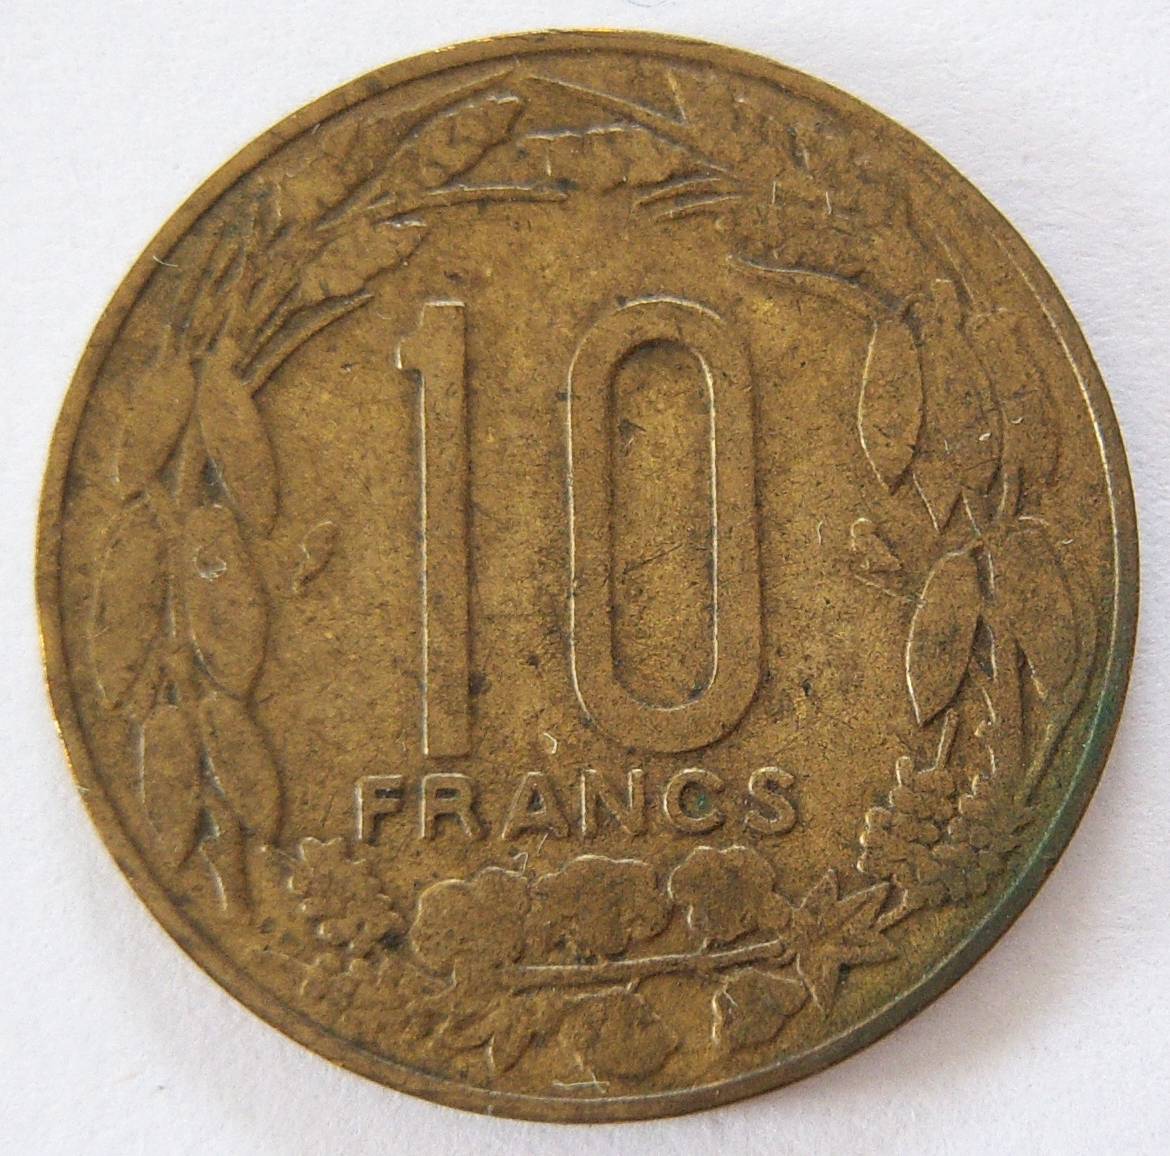  Kamerun 10 Francs 1961   